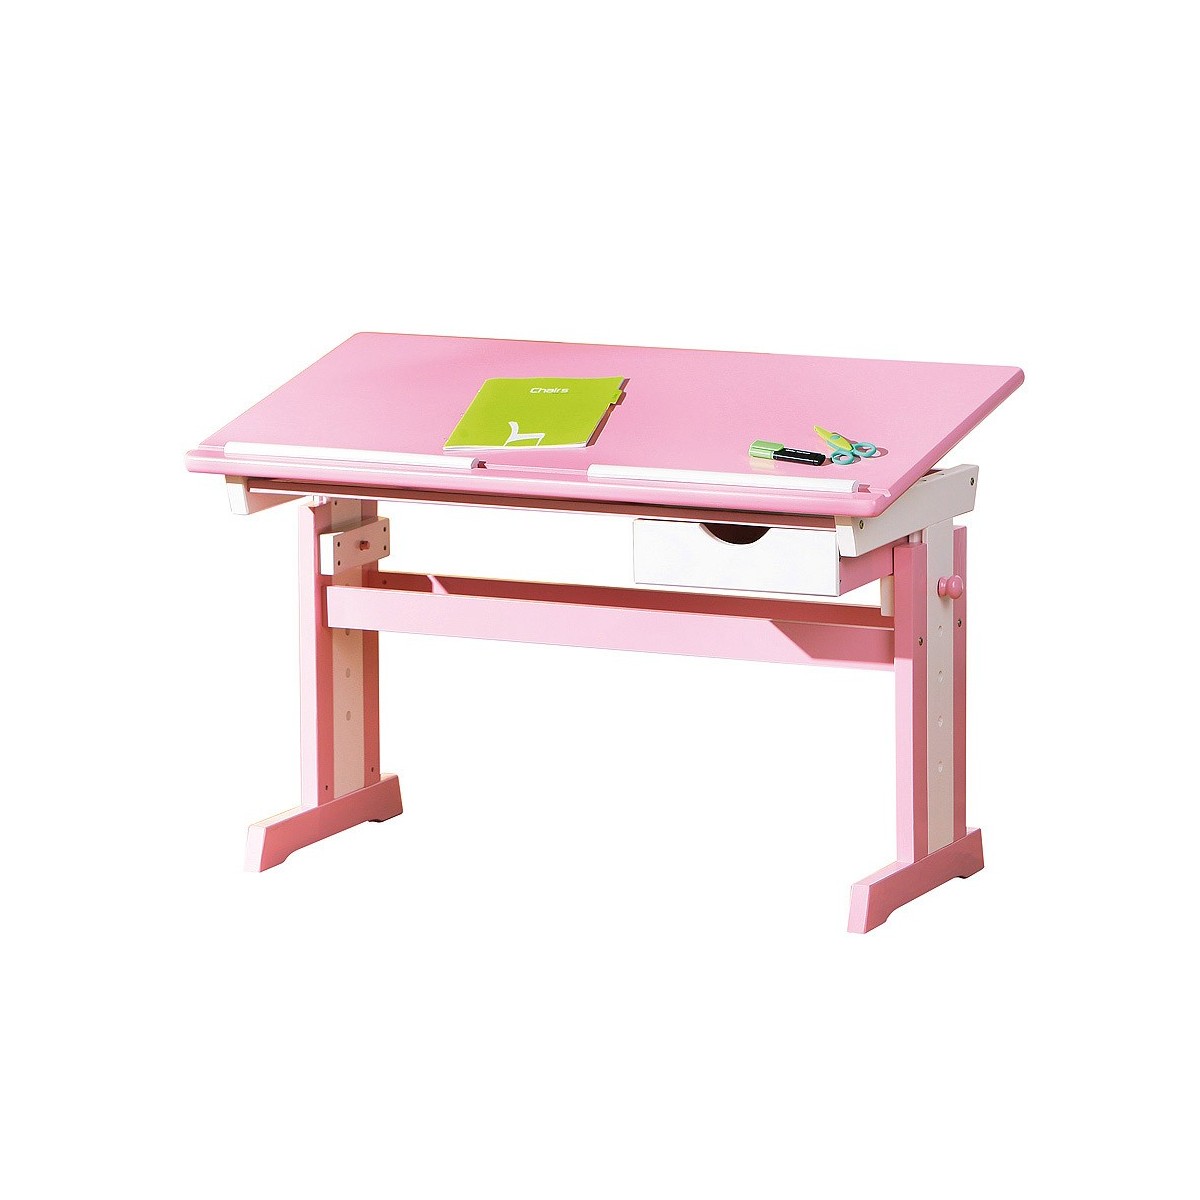 papasbox Set scrivania per Bambini Regolabile in Altezza Rosa con Piano del Tavolo Inclinato,Adatto ai Bambini per Imparare e disegnare può Essere utilizzato nelle scuole e nelle Famiglie 